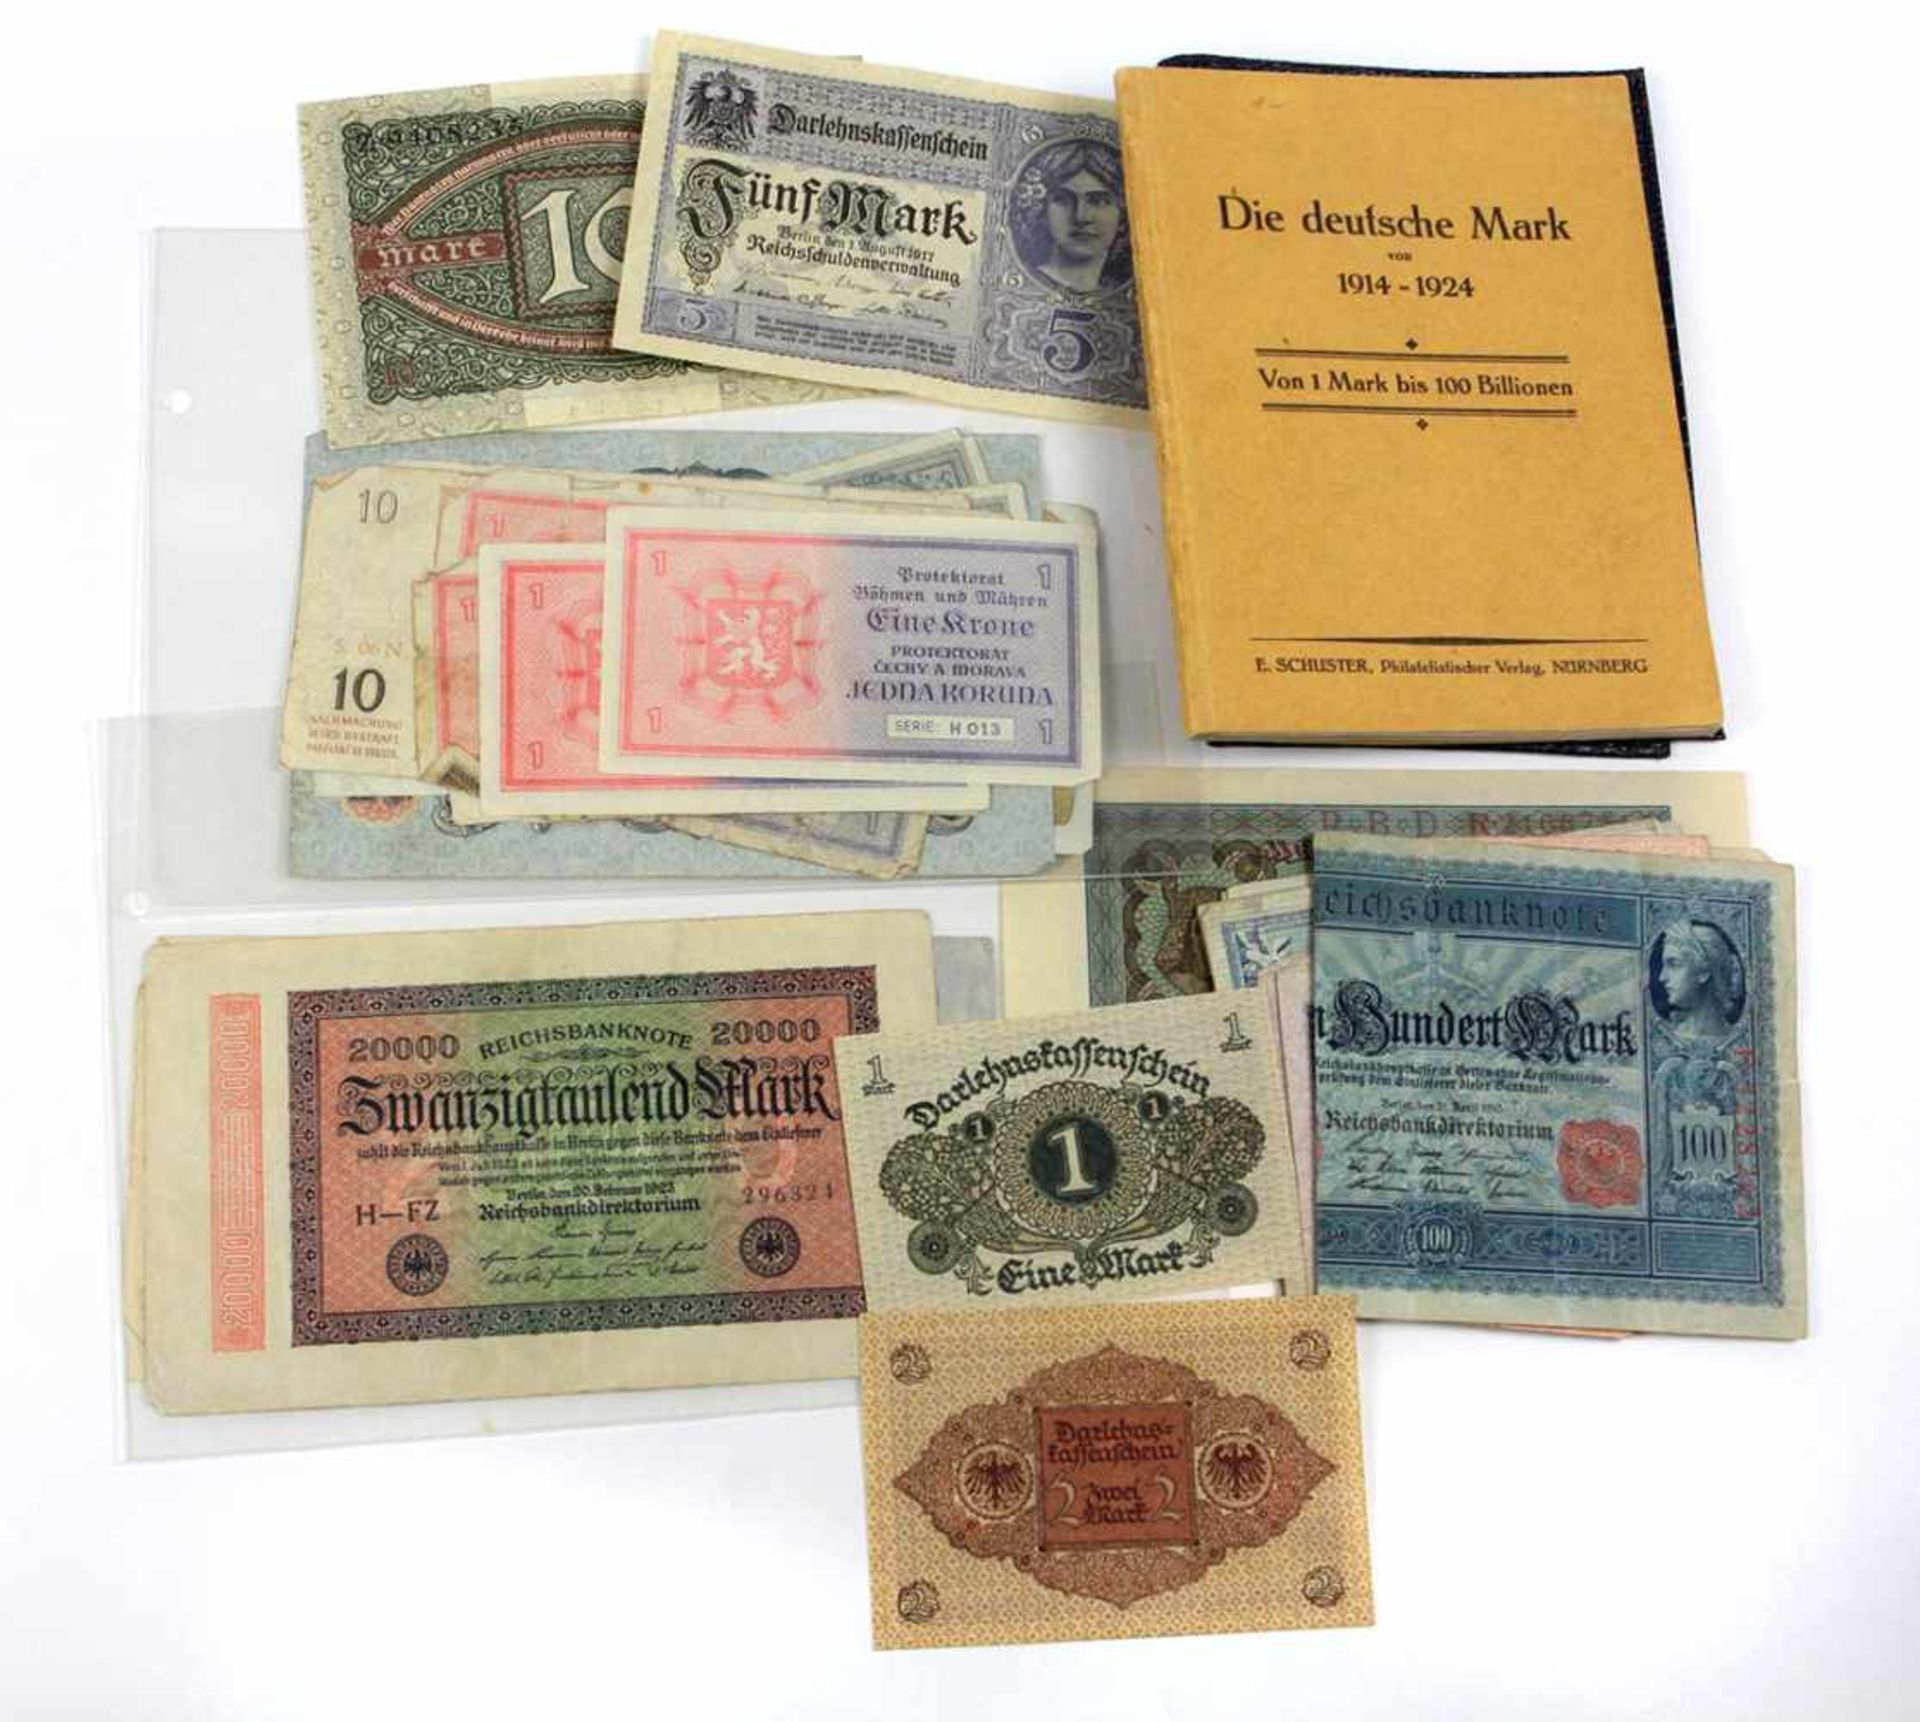 Die Deutsche Mark 1914/24 u. GeldscheineVon 1 Mark bis 100 Billionen.Photo Heft sämtlicher deutscher